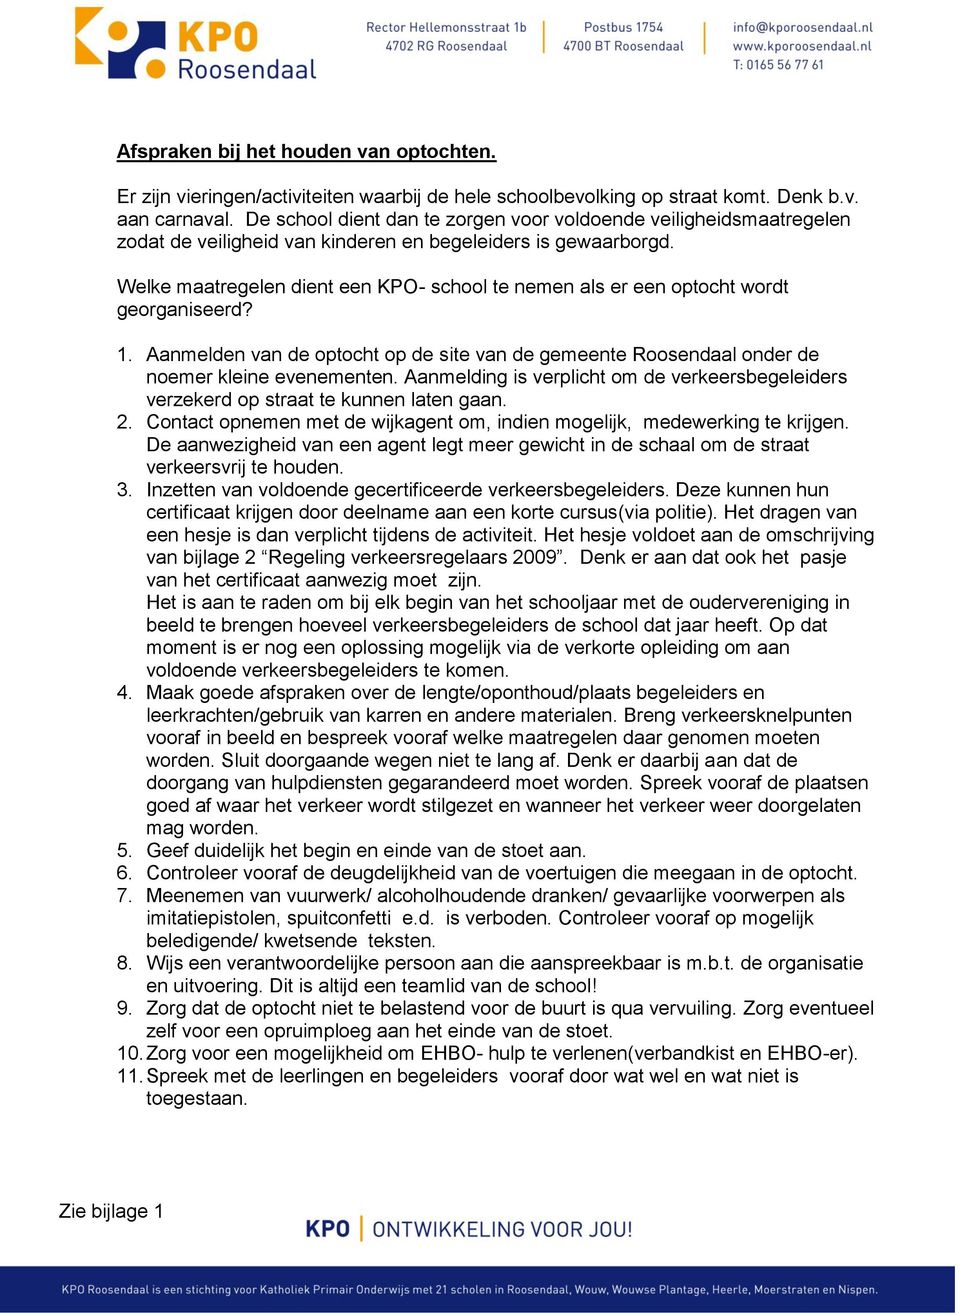 Welke maatregelen dient een KPO- school te nemen als er een optocht wordt georganiseerd? 1. Aanmelden van de optocht op de site van de gemeente Roosendaal onder de noemer kleine evenementen.